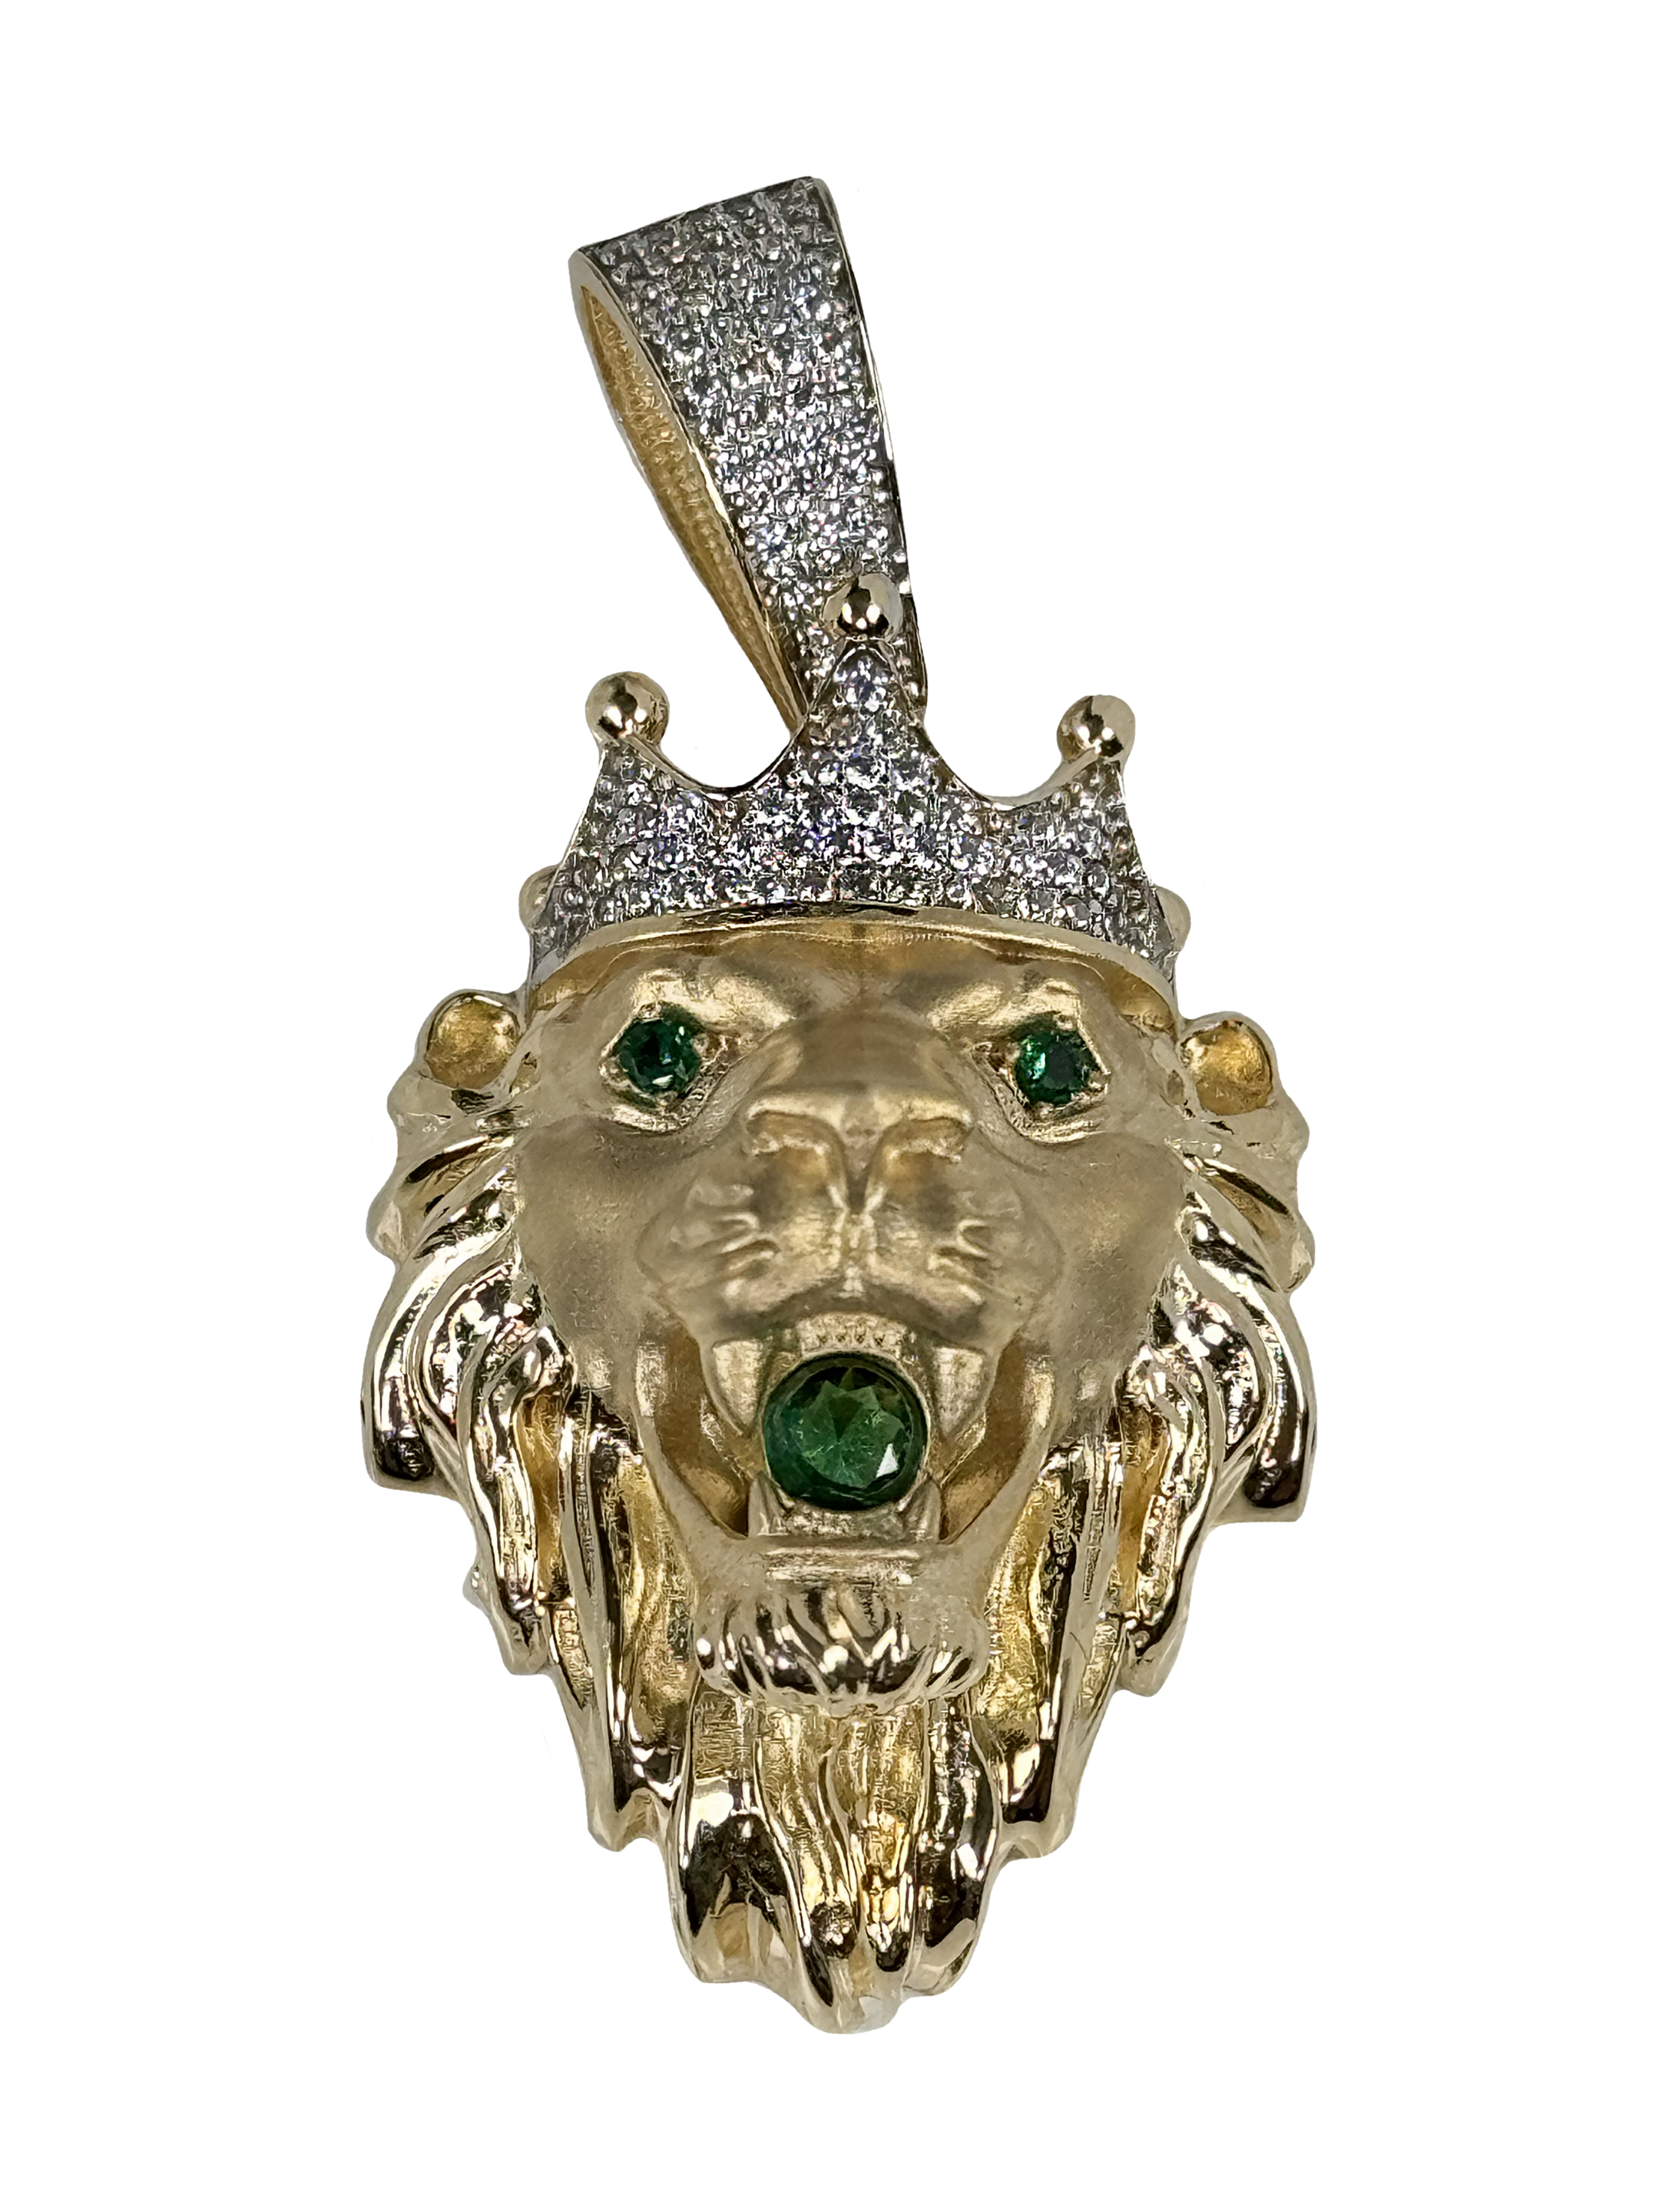 Zlat obesek z znakom leva s krono in zelenimi cirkoni